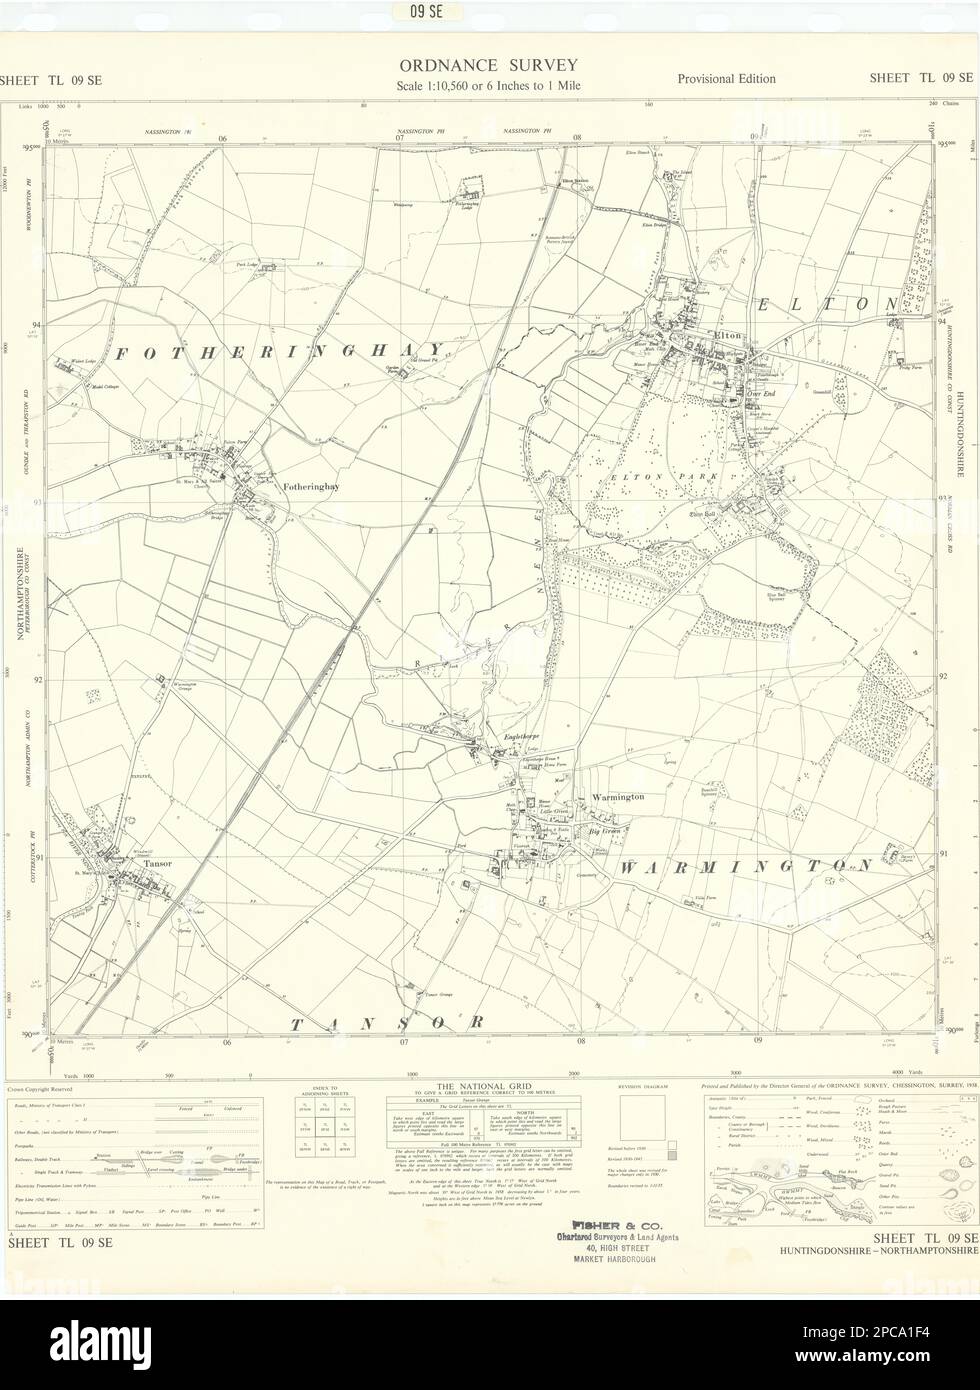 Ordnance Survey TL09SE Hunts Elton Warmington Fotheringhay Tansor 1958 mapa antiguo Foto de stock